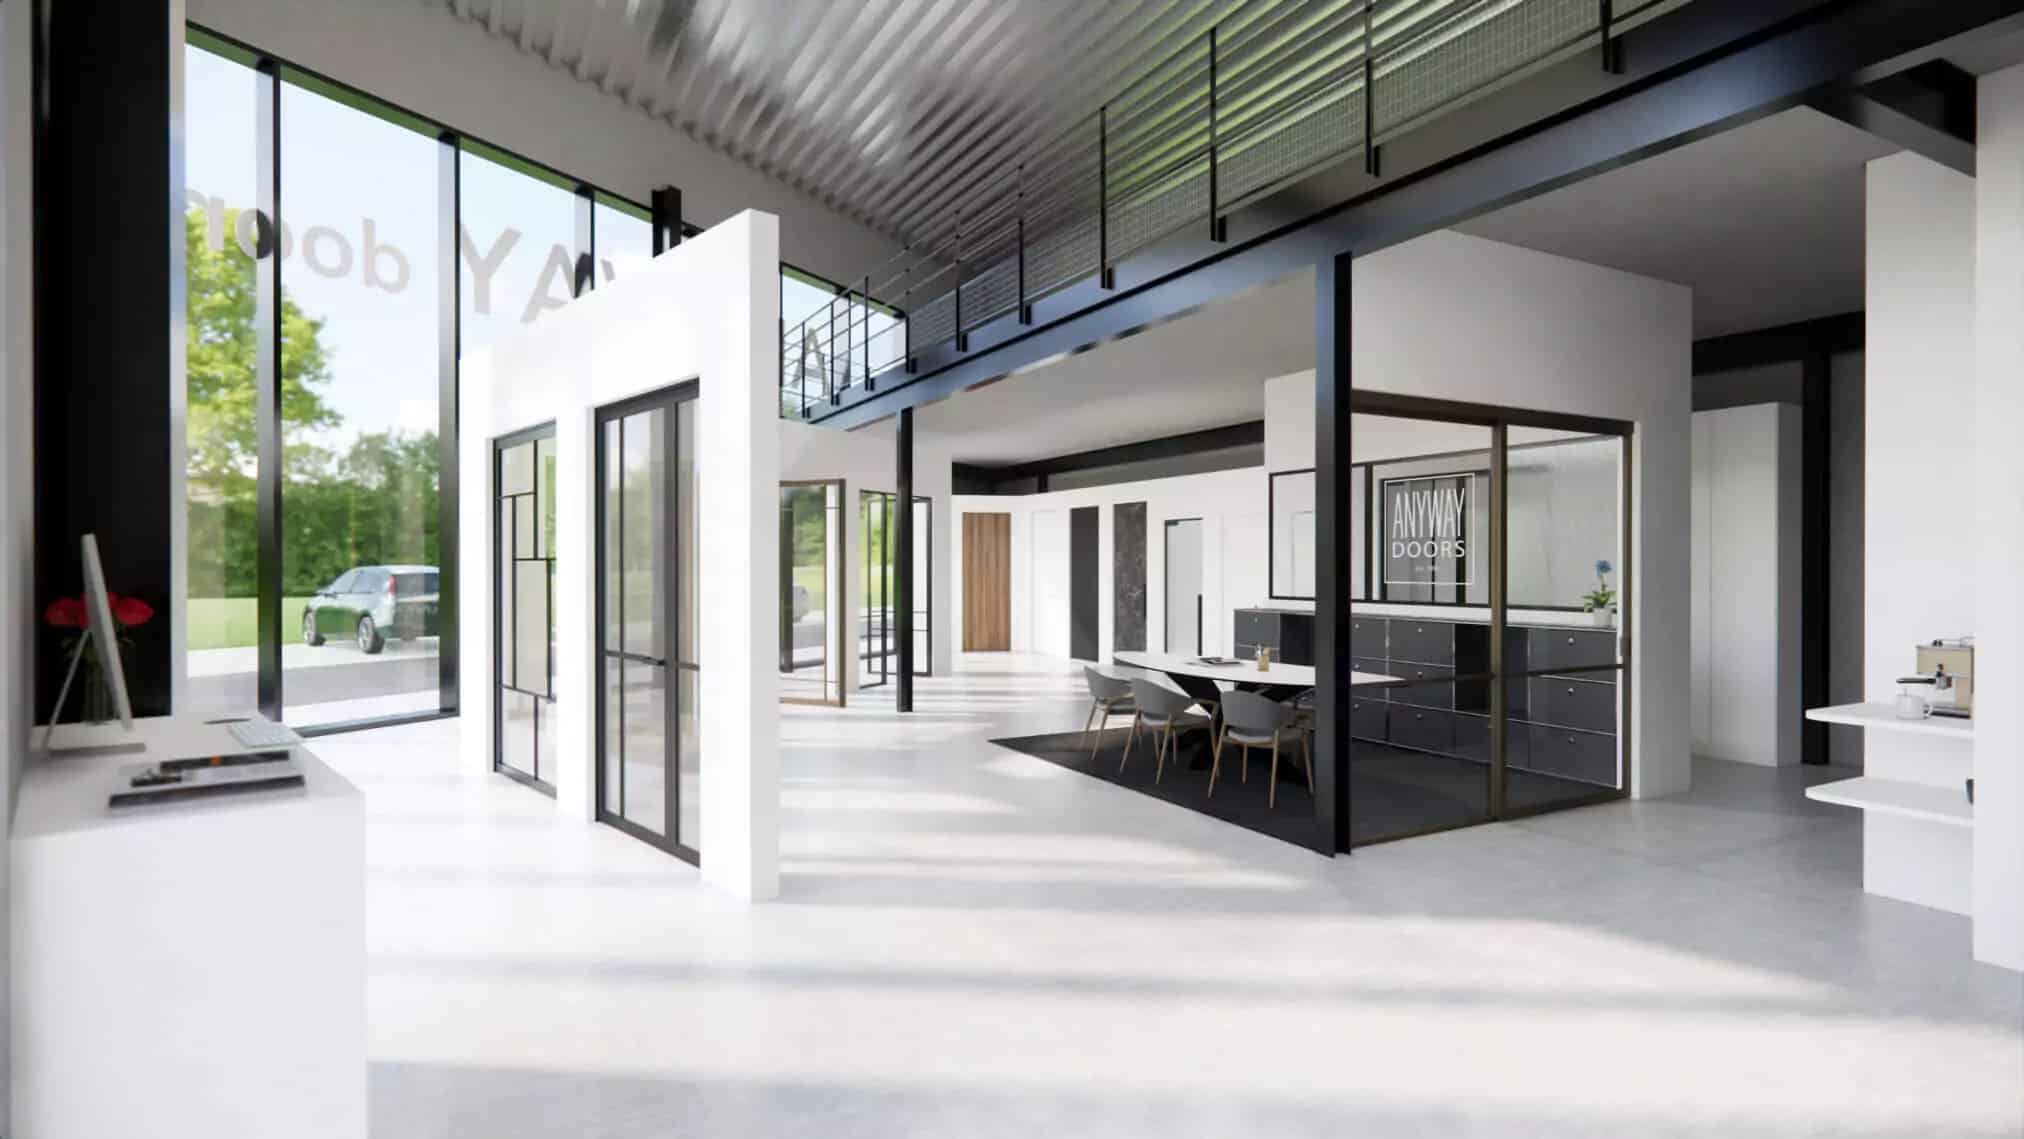 Showroom ANYWAYdoors Wavre - Concept Store vu de jour